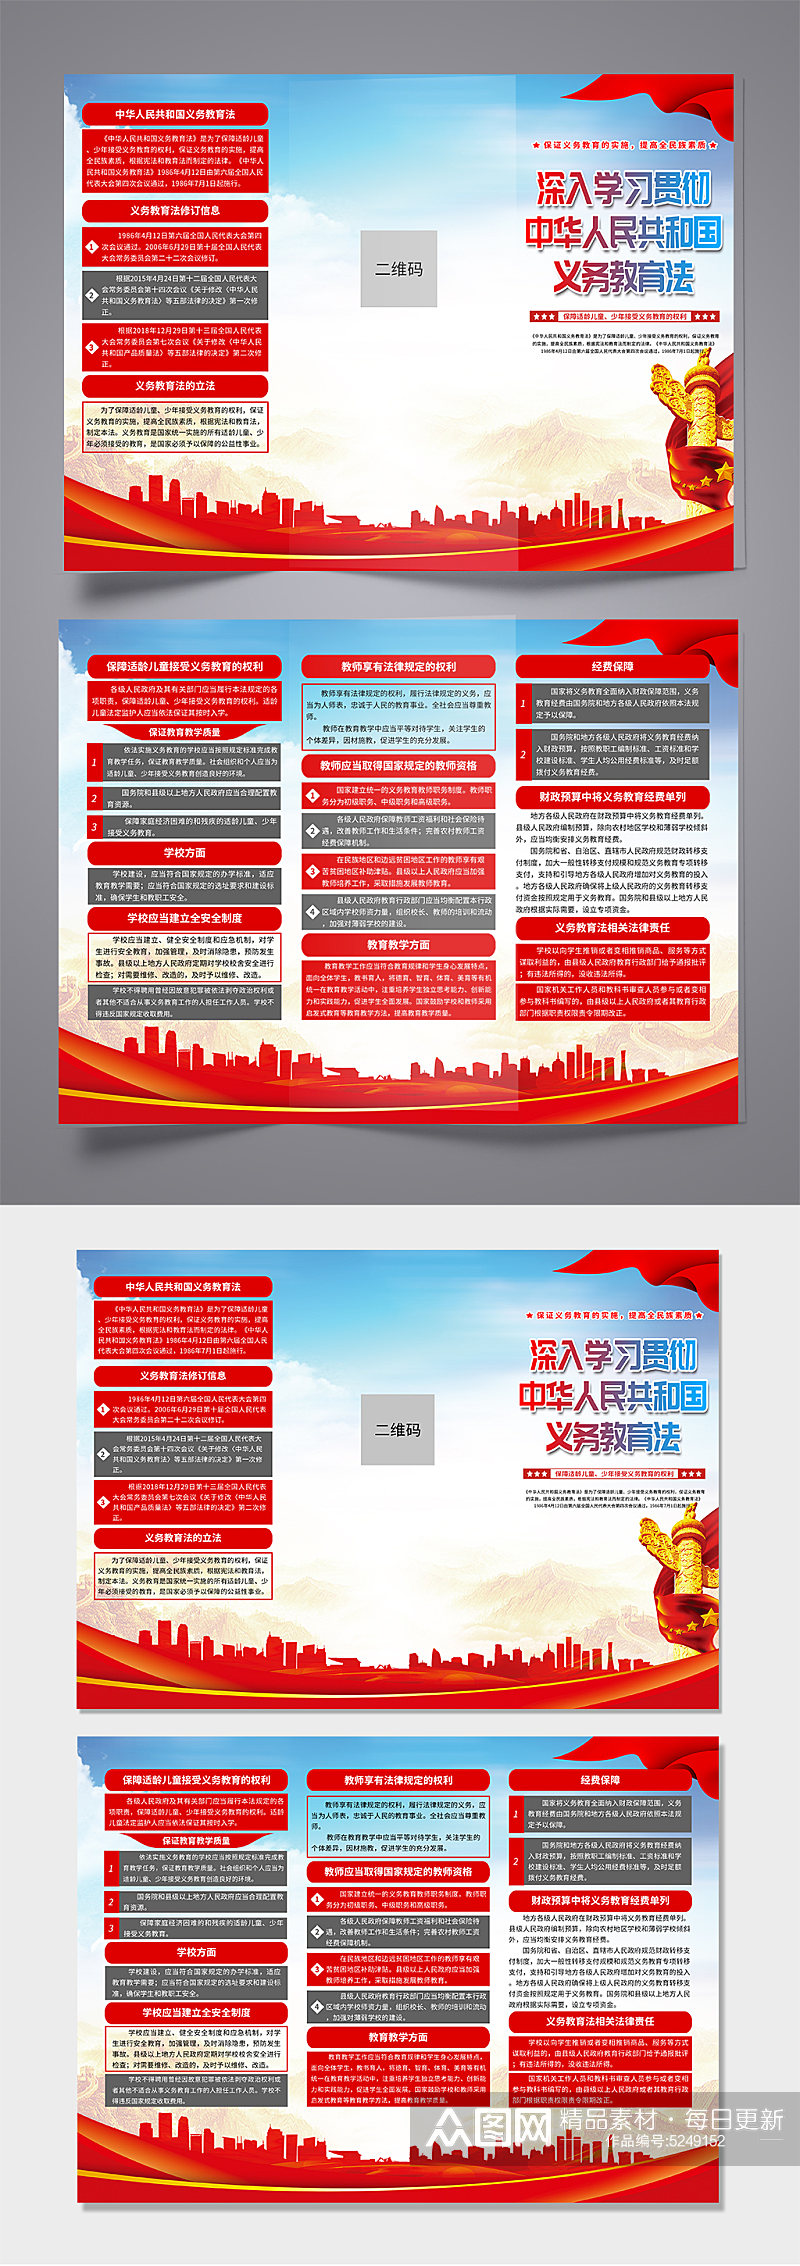 蓝色中华人民共和国义务教育法党建折页素材